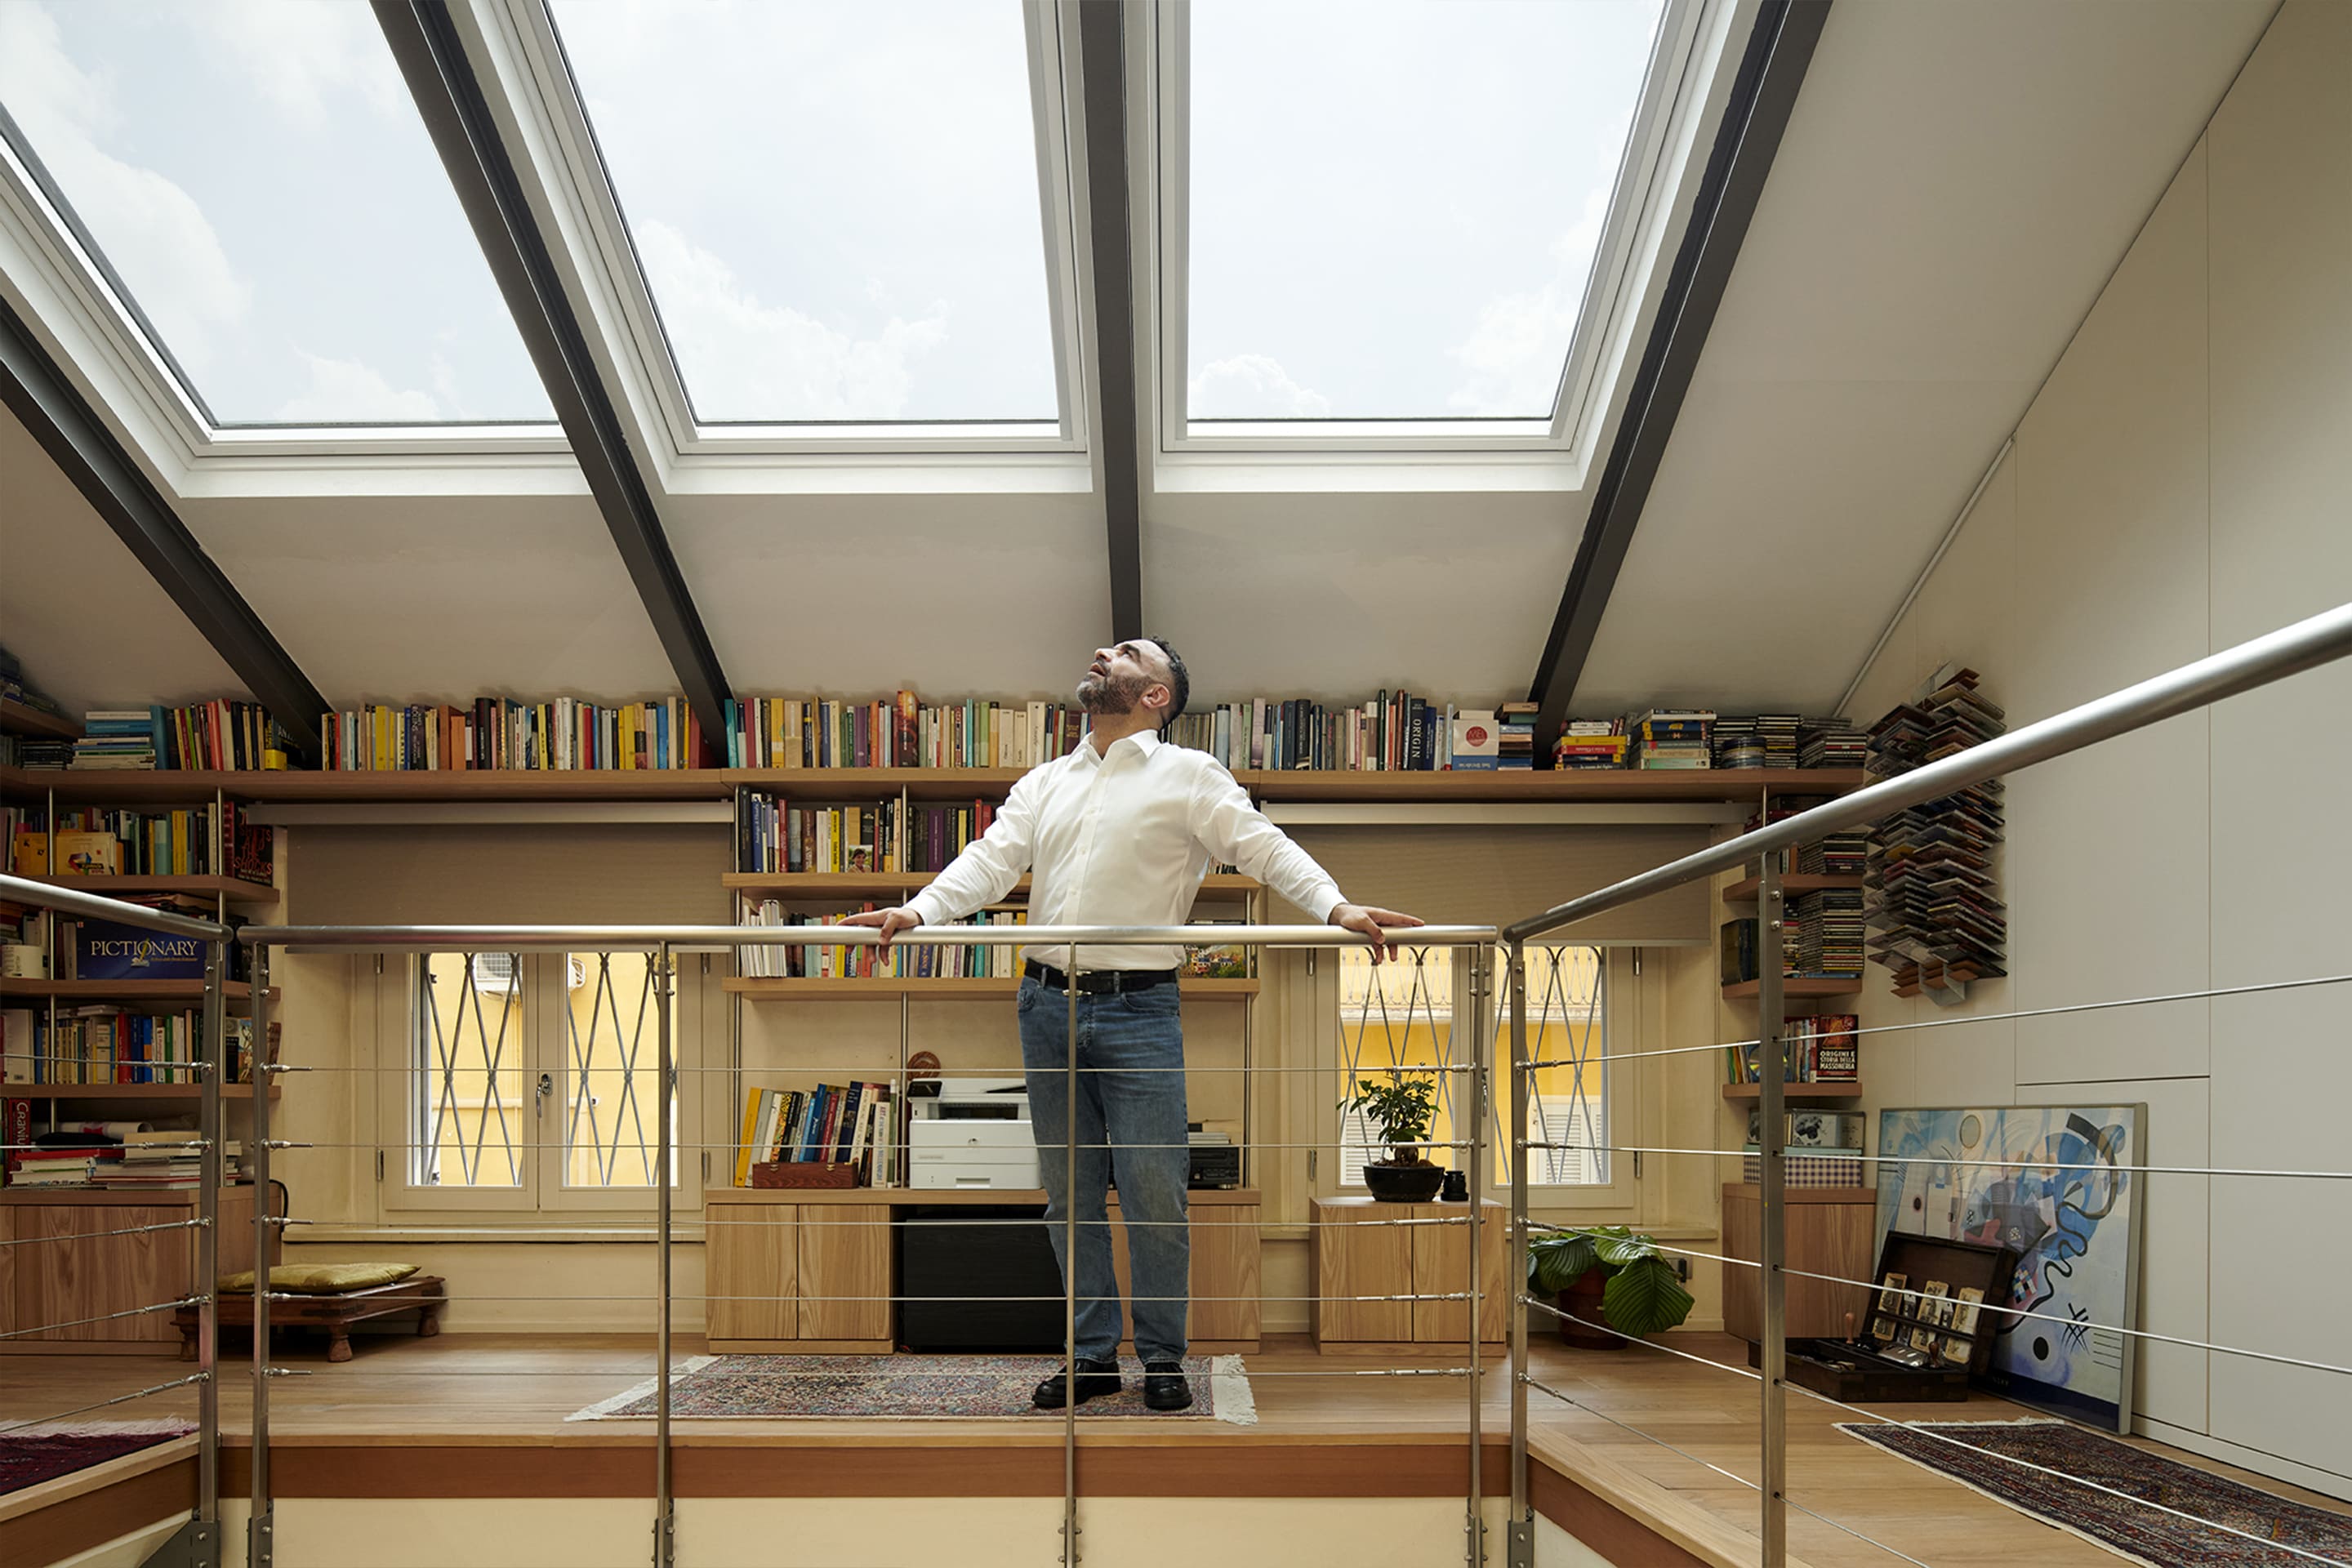 Uomo in ufficio domestico sottotetto con finestre per tetti VELUX e scaffali per libri.